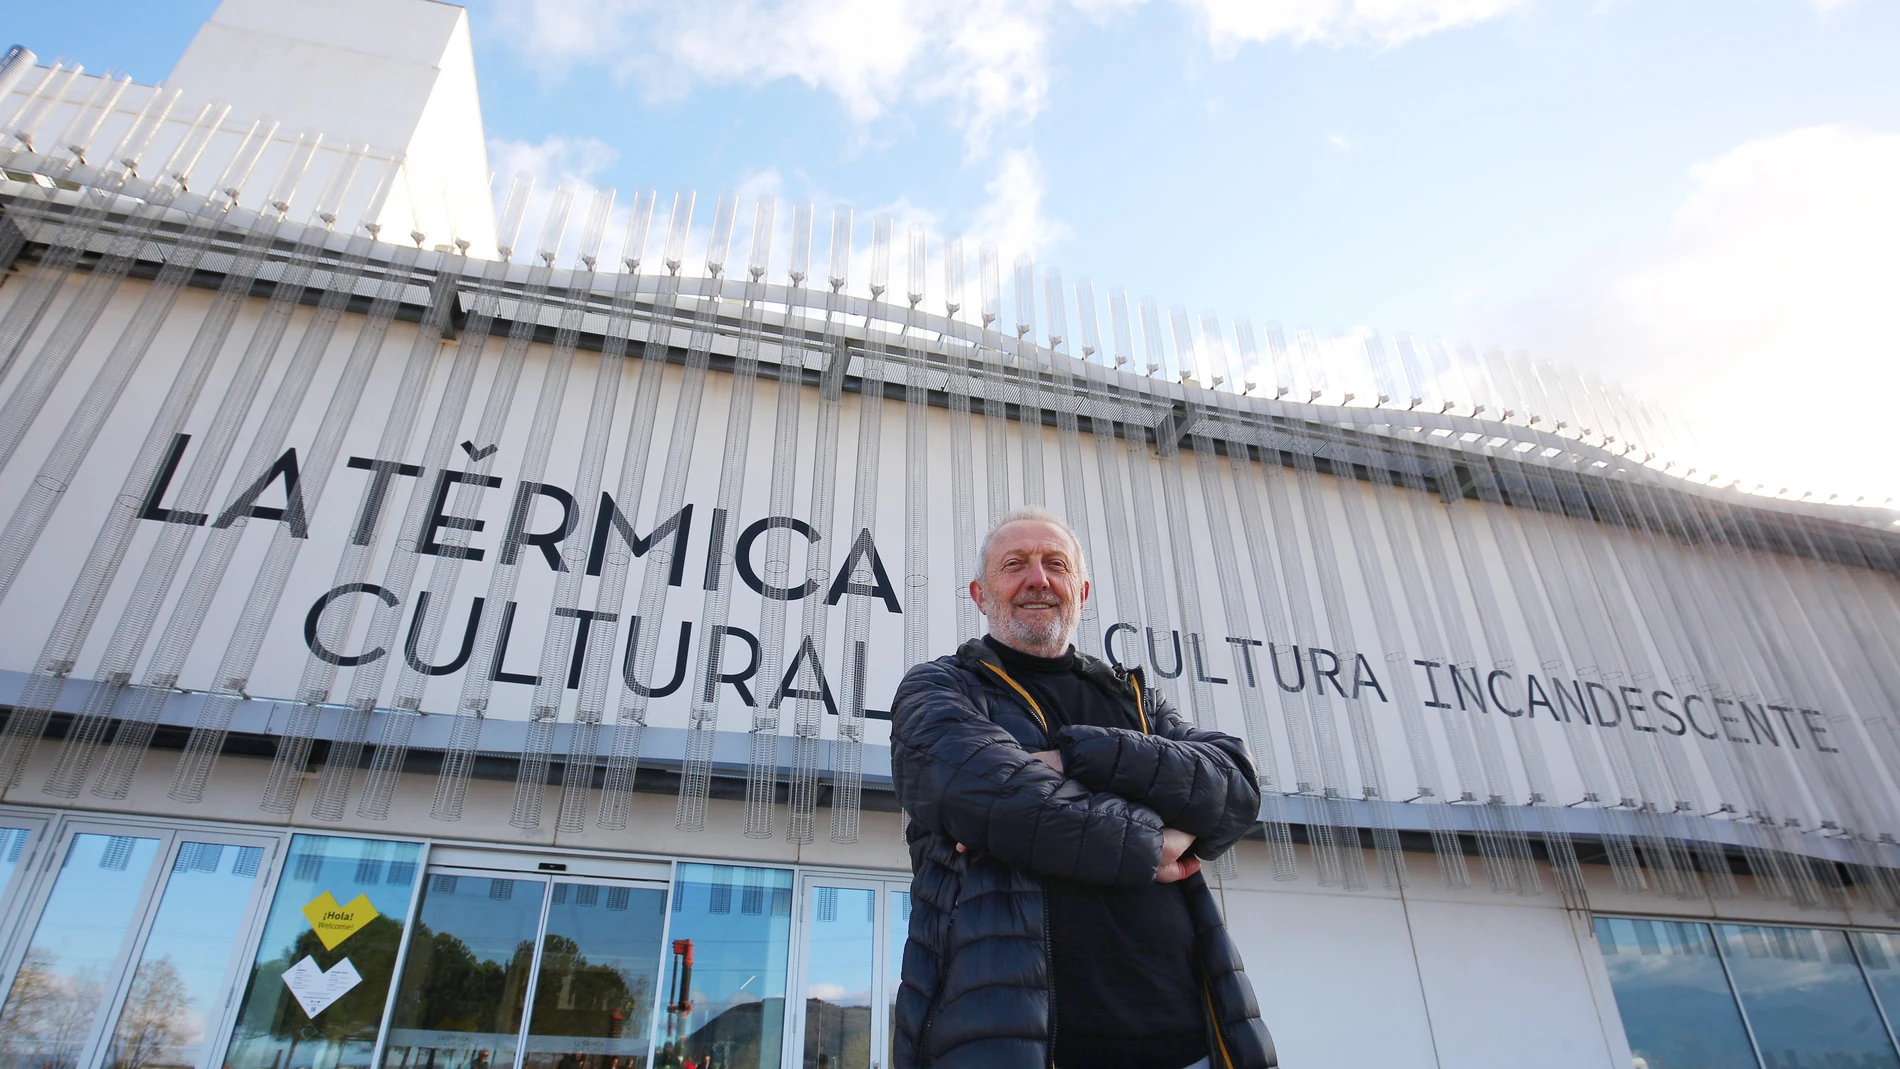 El director general de Ciuden, Arsenio Terrón, informa sobre la apertura de las nuevas instalaciones del proyecto La Térmica Cultural